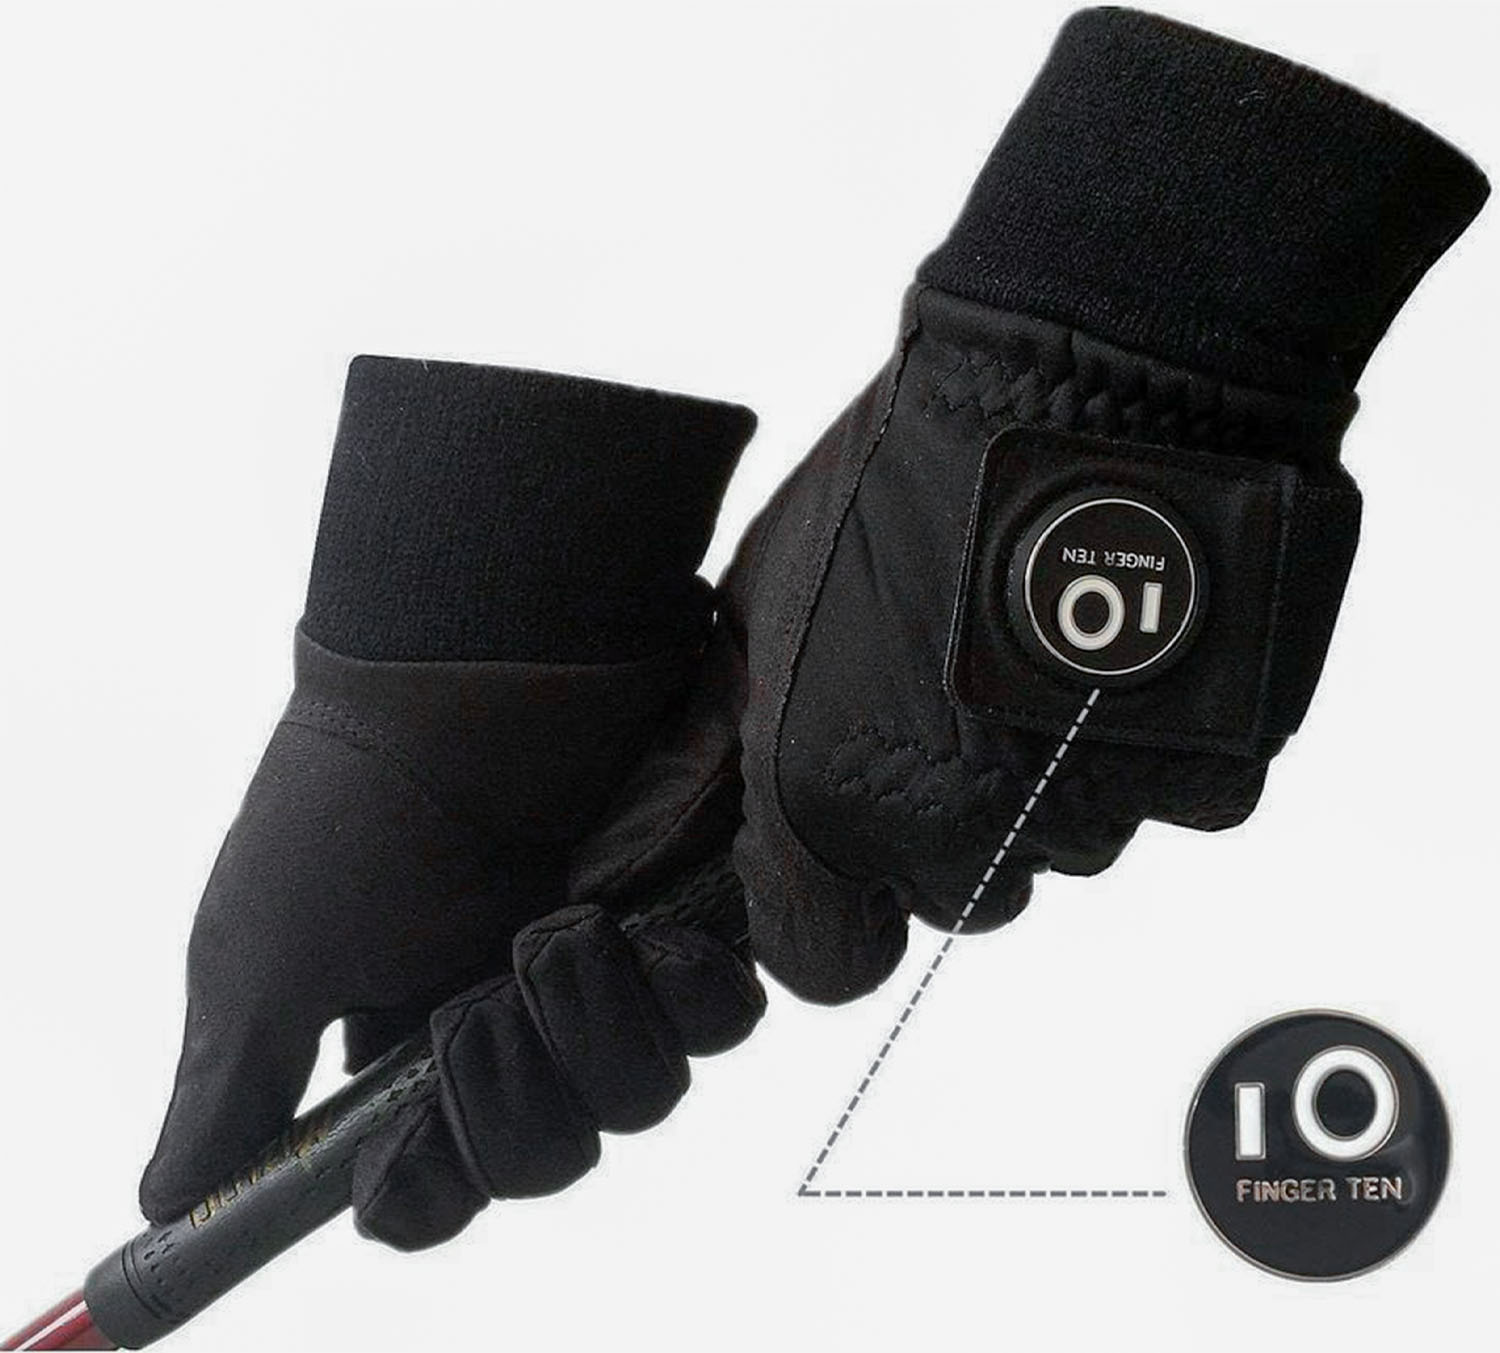 A Finger Ten winter golf gloves holding a golf club handle